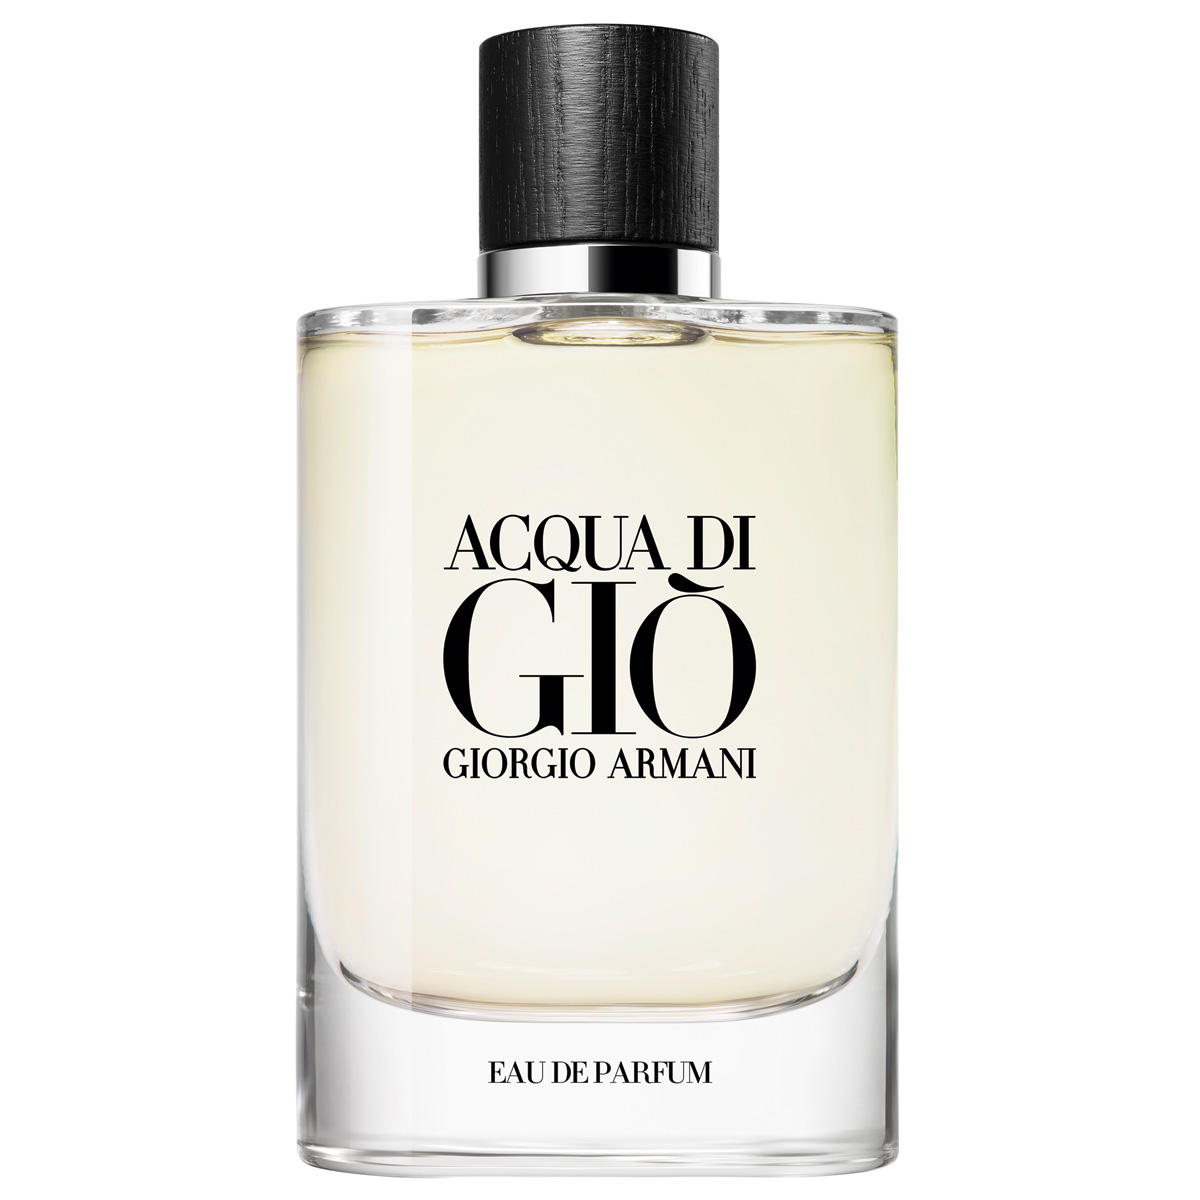 Giorgio Armani ACQUA DI GIÒ Refillable Eau de Parfum 125 ml